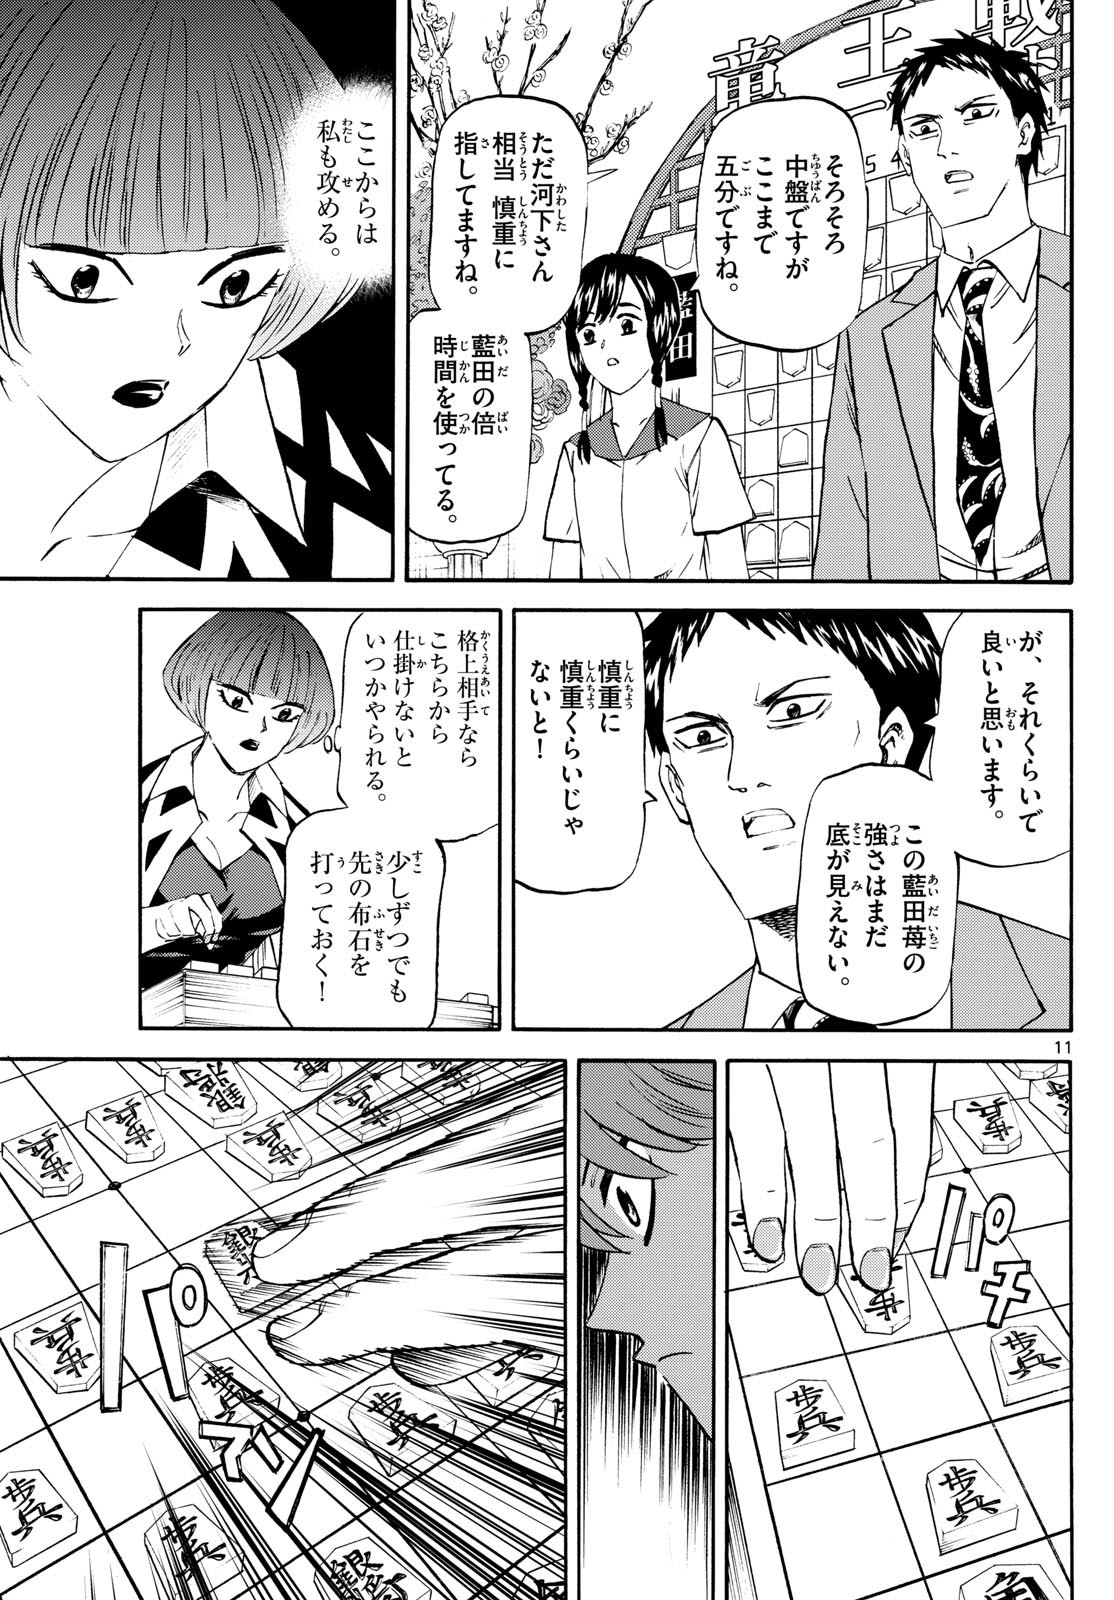 Ryu-to-Ichigo - Chapter 200 - Page 11